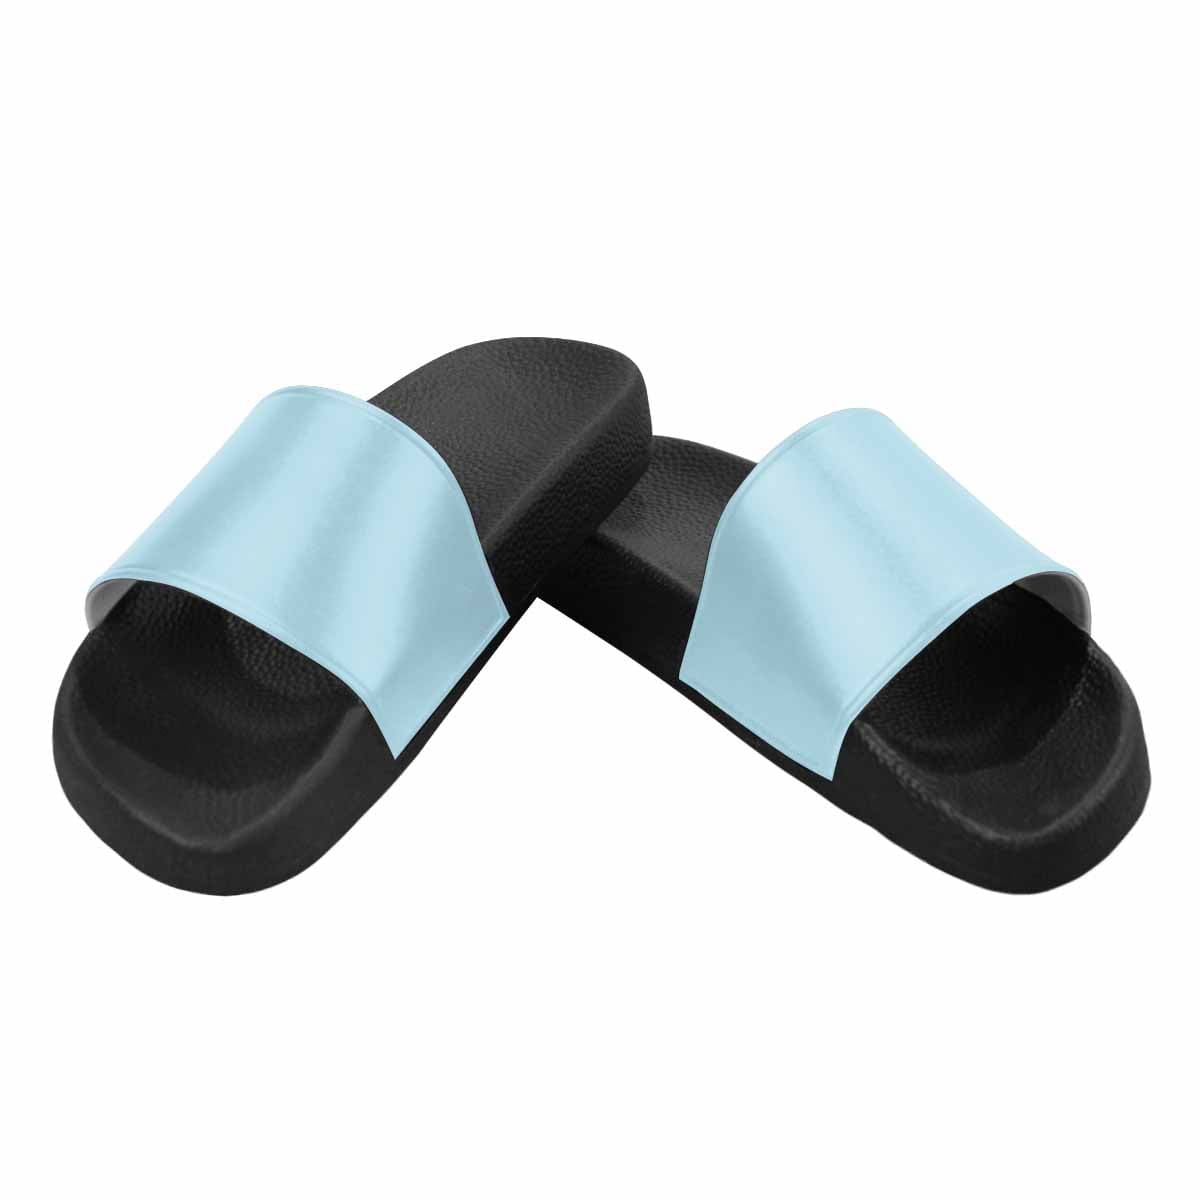 Light Blue Slide Sandals for Women size 7 - Deals | Shoes